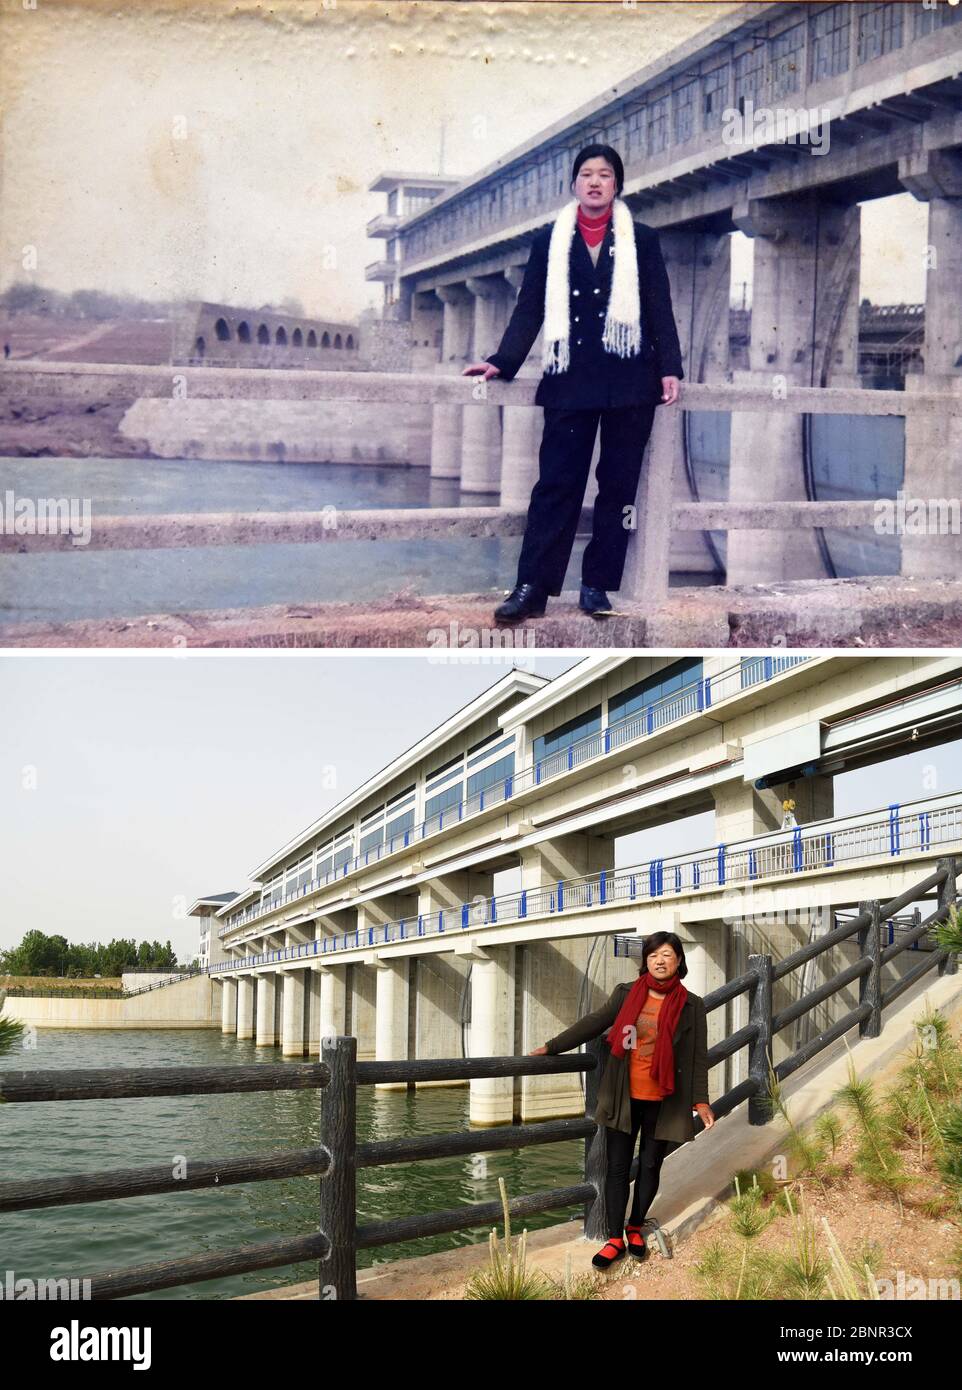 (200516) -- CONTEA di JUXIAN, 16 maggio 2020 (Xinhua) -- la combinazione di foto mostra Yu Shu'ai che si pone vicino alla fuoriuscita del bacino idrico di Qingfengling nel 1998 (foto in alto fornita da Yu Shu'ai) e il 13 maggio 2020 (foto in basso scattata da Wang Kai), rispettivamente. Quando Yu Shu'ai ha perso il suo marito in 2012, la vita ha girato duro downright -- le fatture mediche avevano esaurito tutti i suoi risparmi di famiglia, lasciando Yu ed il suo figlio in sforzo finanziario. Nel 2014, quando il governo locale di Anzhuang invitò Yu a partecipare a uno dei progetti di riduzione della povertà della cittadina, le sue condizioni di vita iniziarono a migliorare. Per aiutare impov Foto Stock